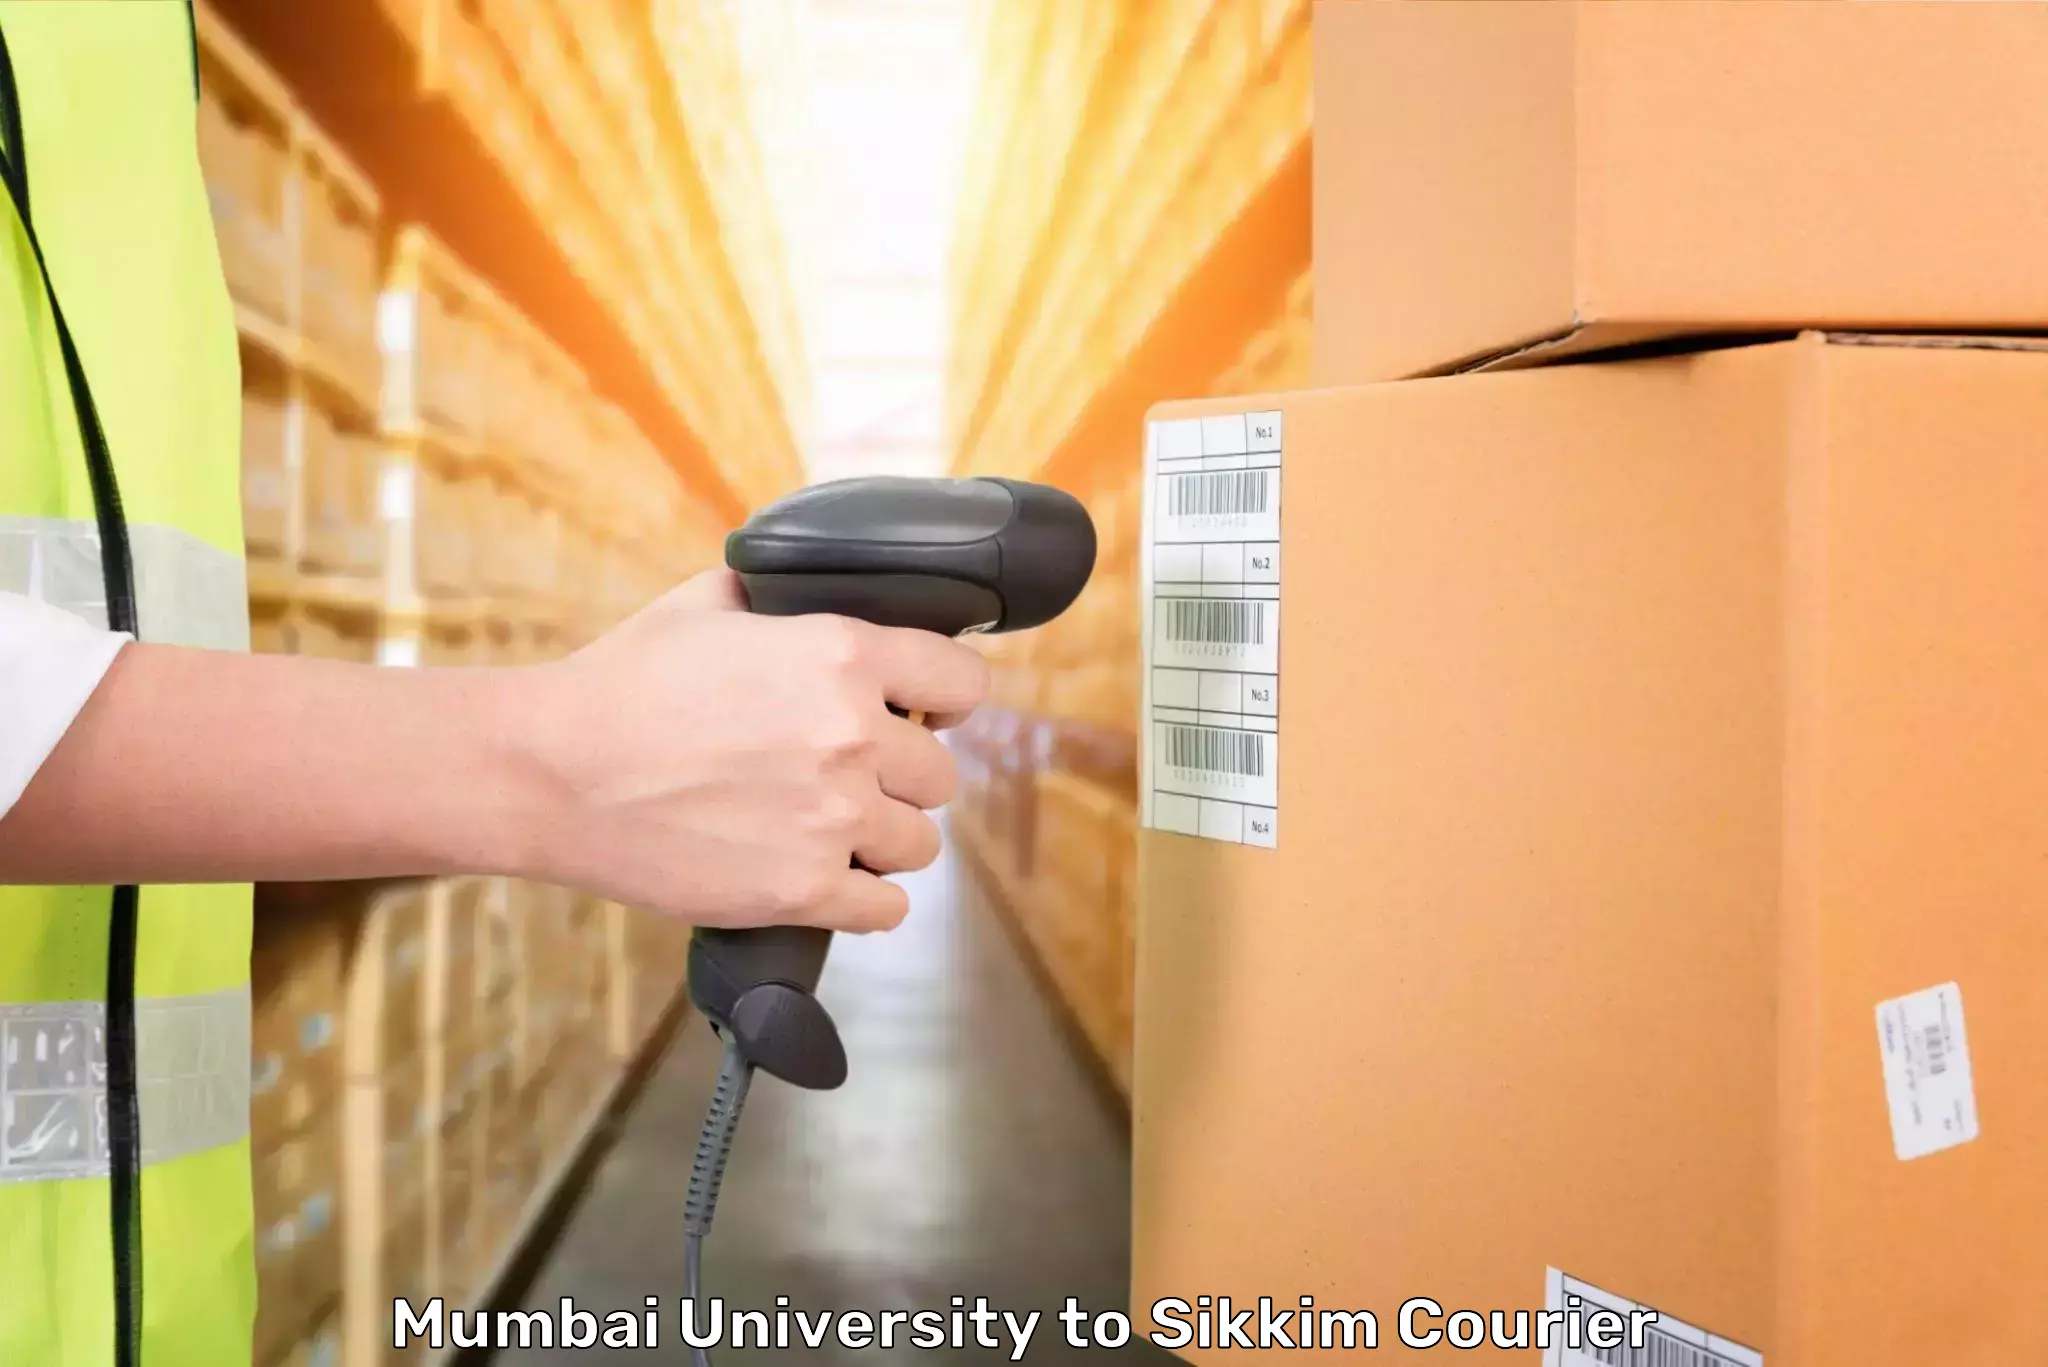 Baggage handling services Mumbai University to Pelling